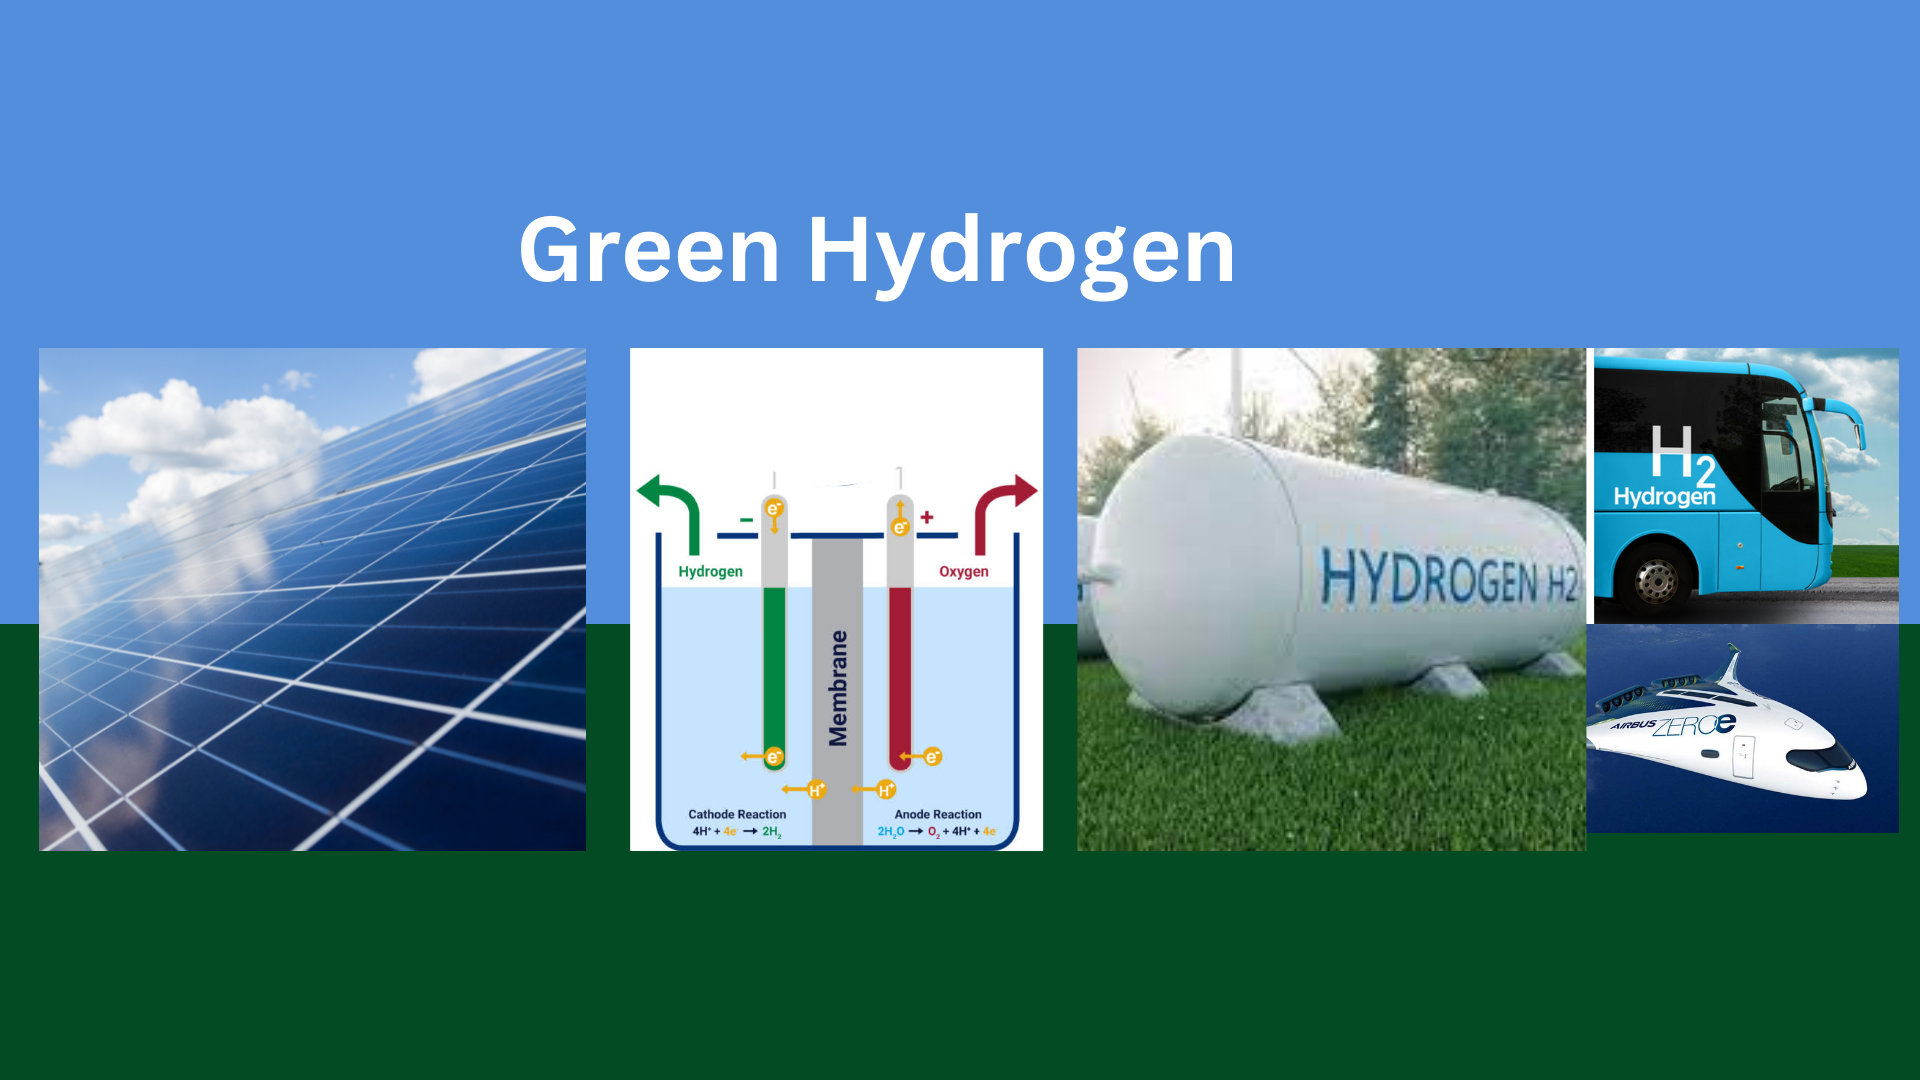 ७ वर्षमा हरित हाइड्रोजनमा ३ खर्ब लगानी गर्ने भारतको घोषणा, ५० लाख टन उत्पादन लक्ष्य